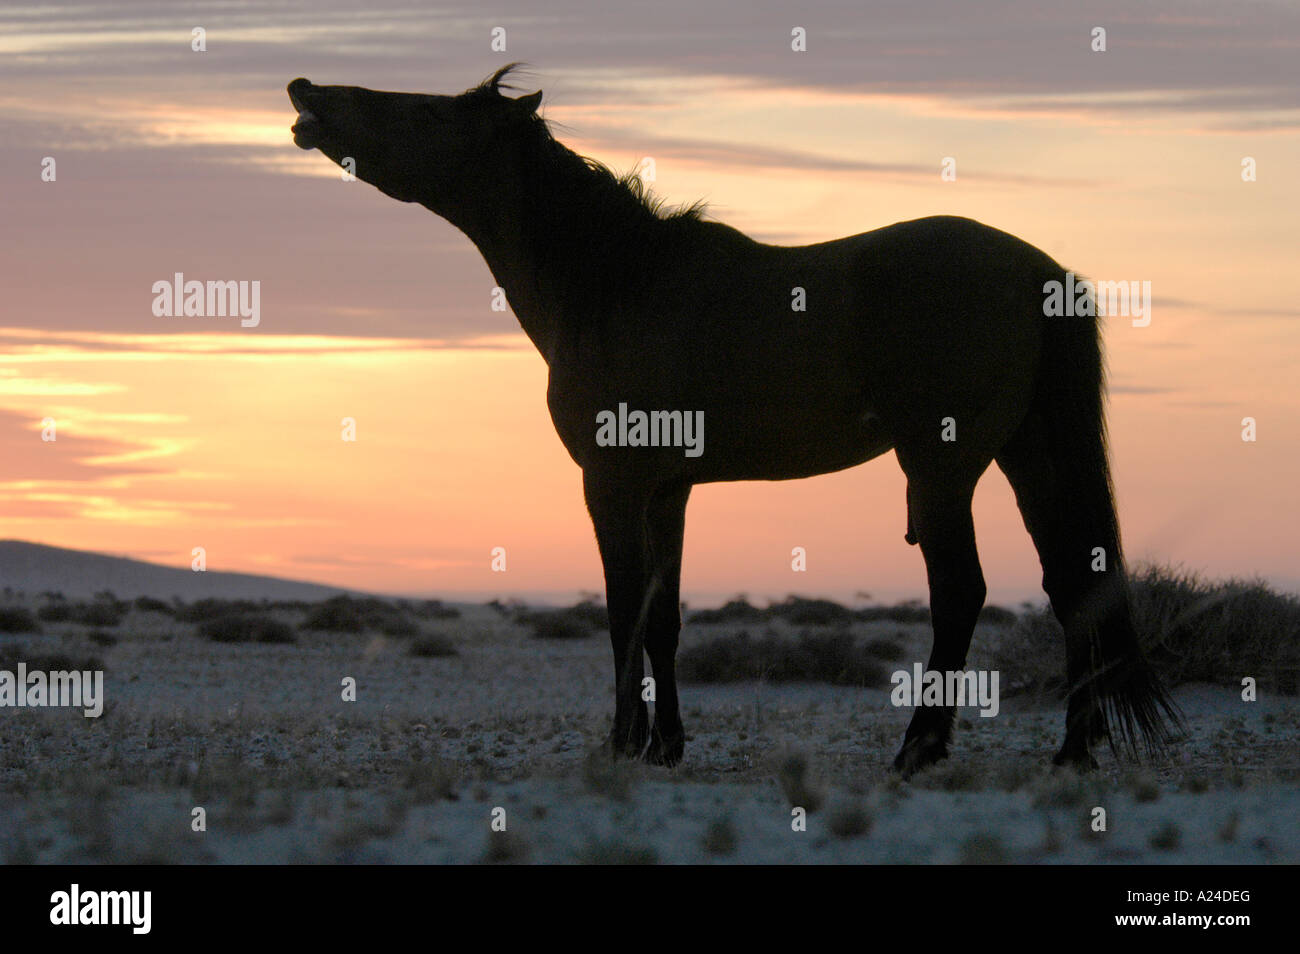 Namibische Wildpferde Wild Horses in Namibia Africa Stock Photo